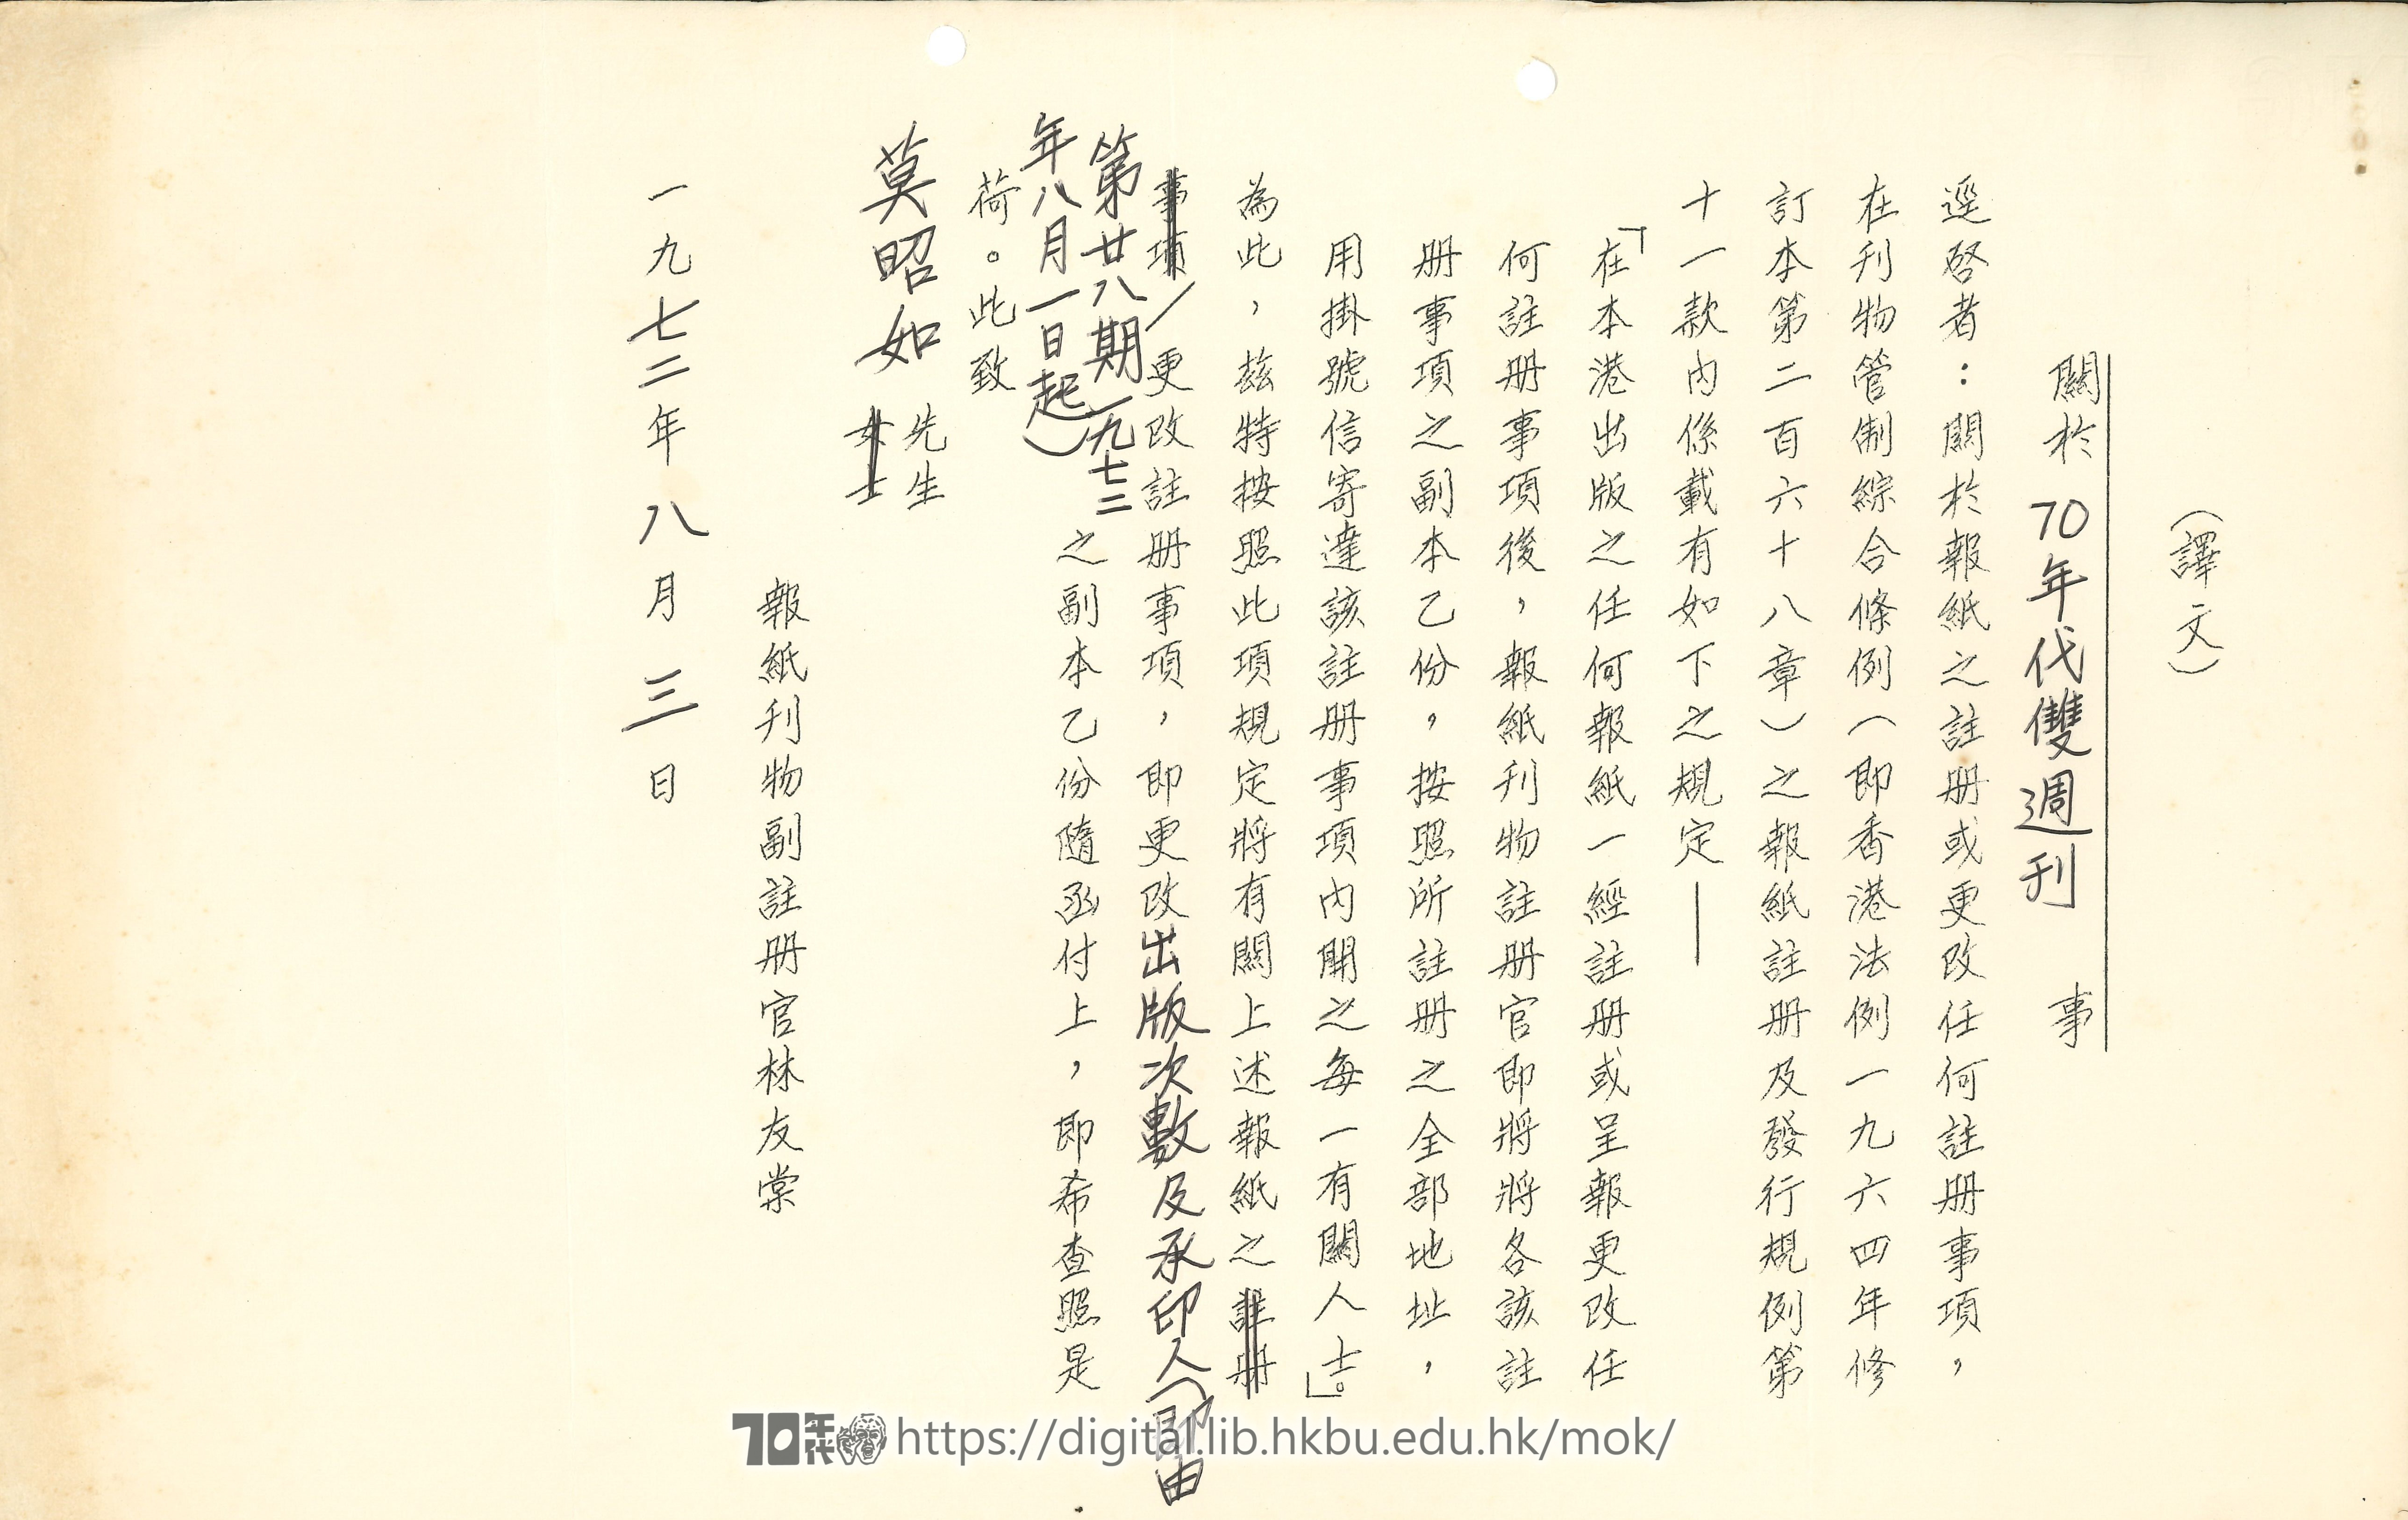   報紙刊物註冊官致函莫昭如 關於70年代雙周刊註冊事宜 MOK, Chiu Yu 